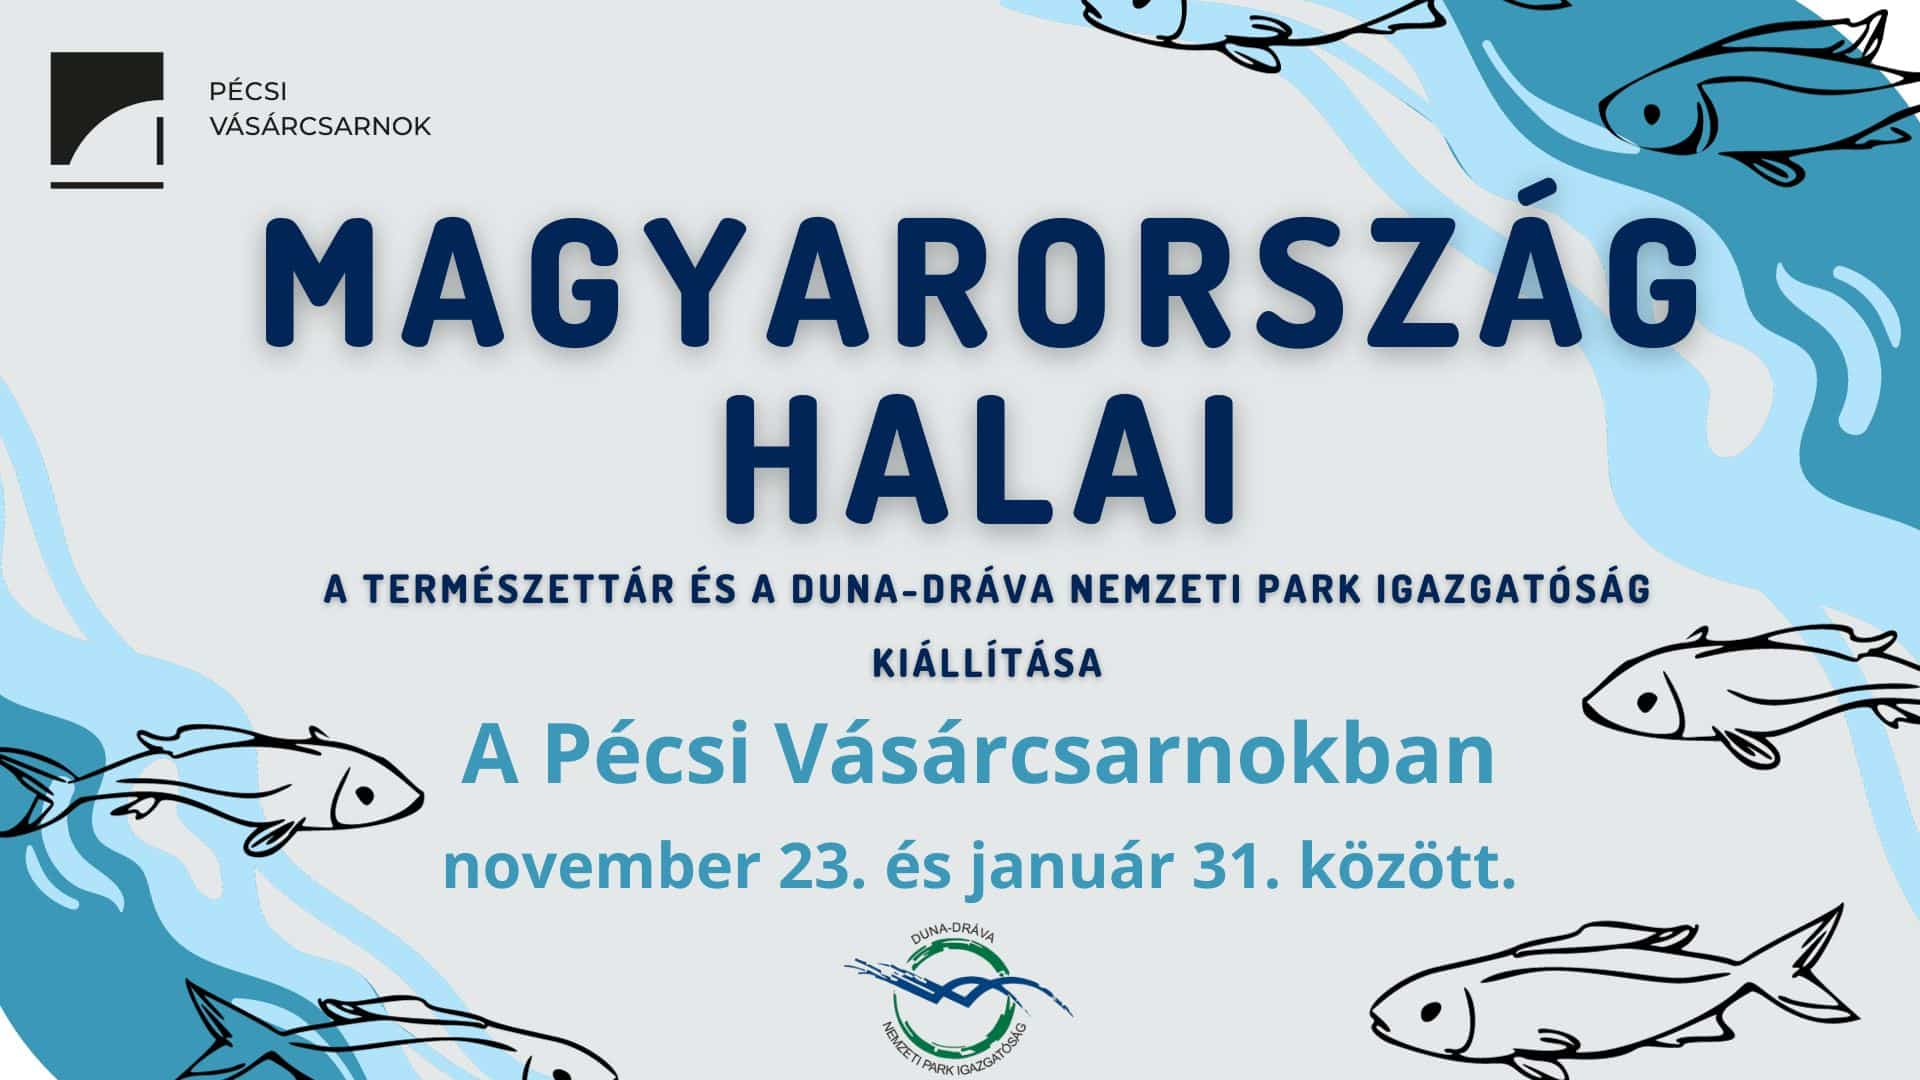 Magyarország halai - Informatív kiállítás a Pécsi Vásárcsarnokban